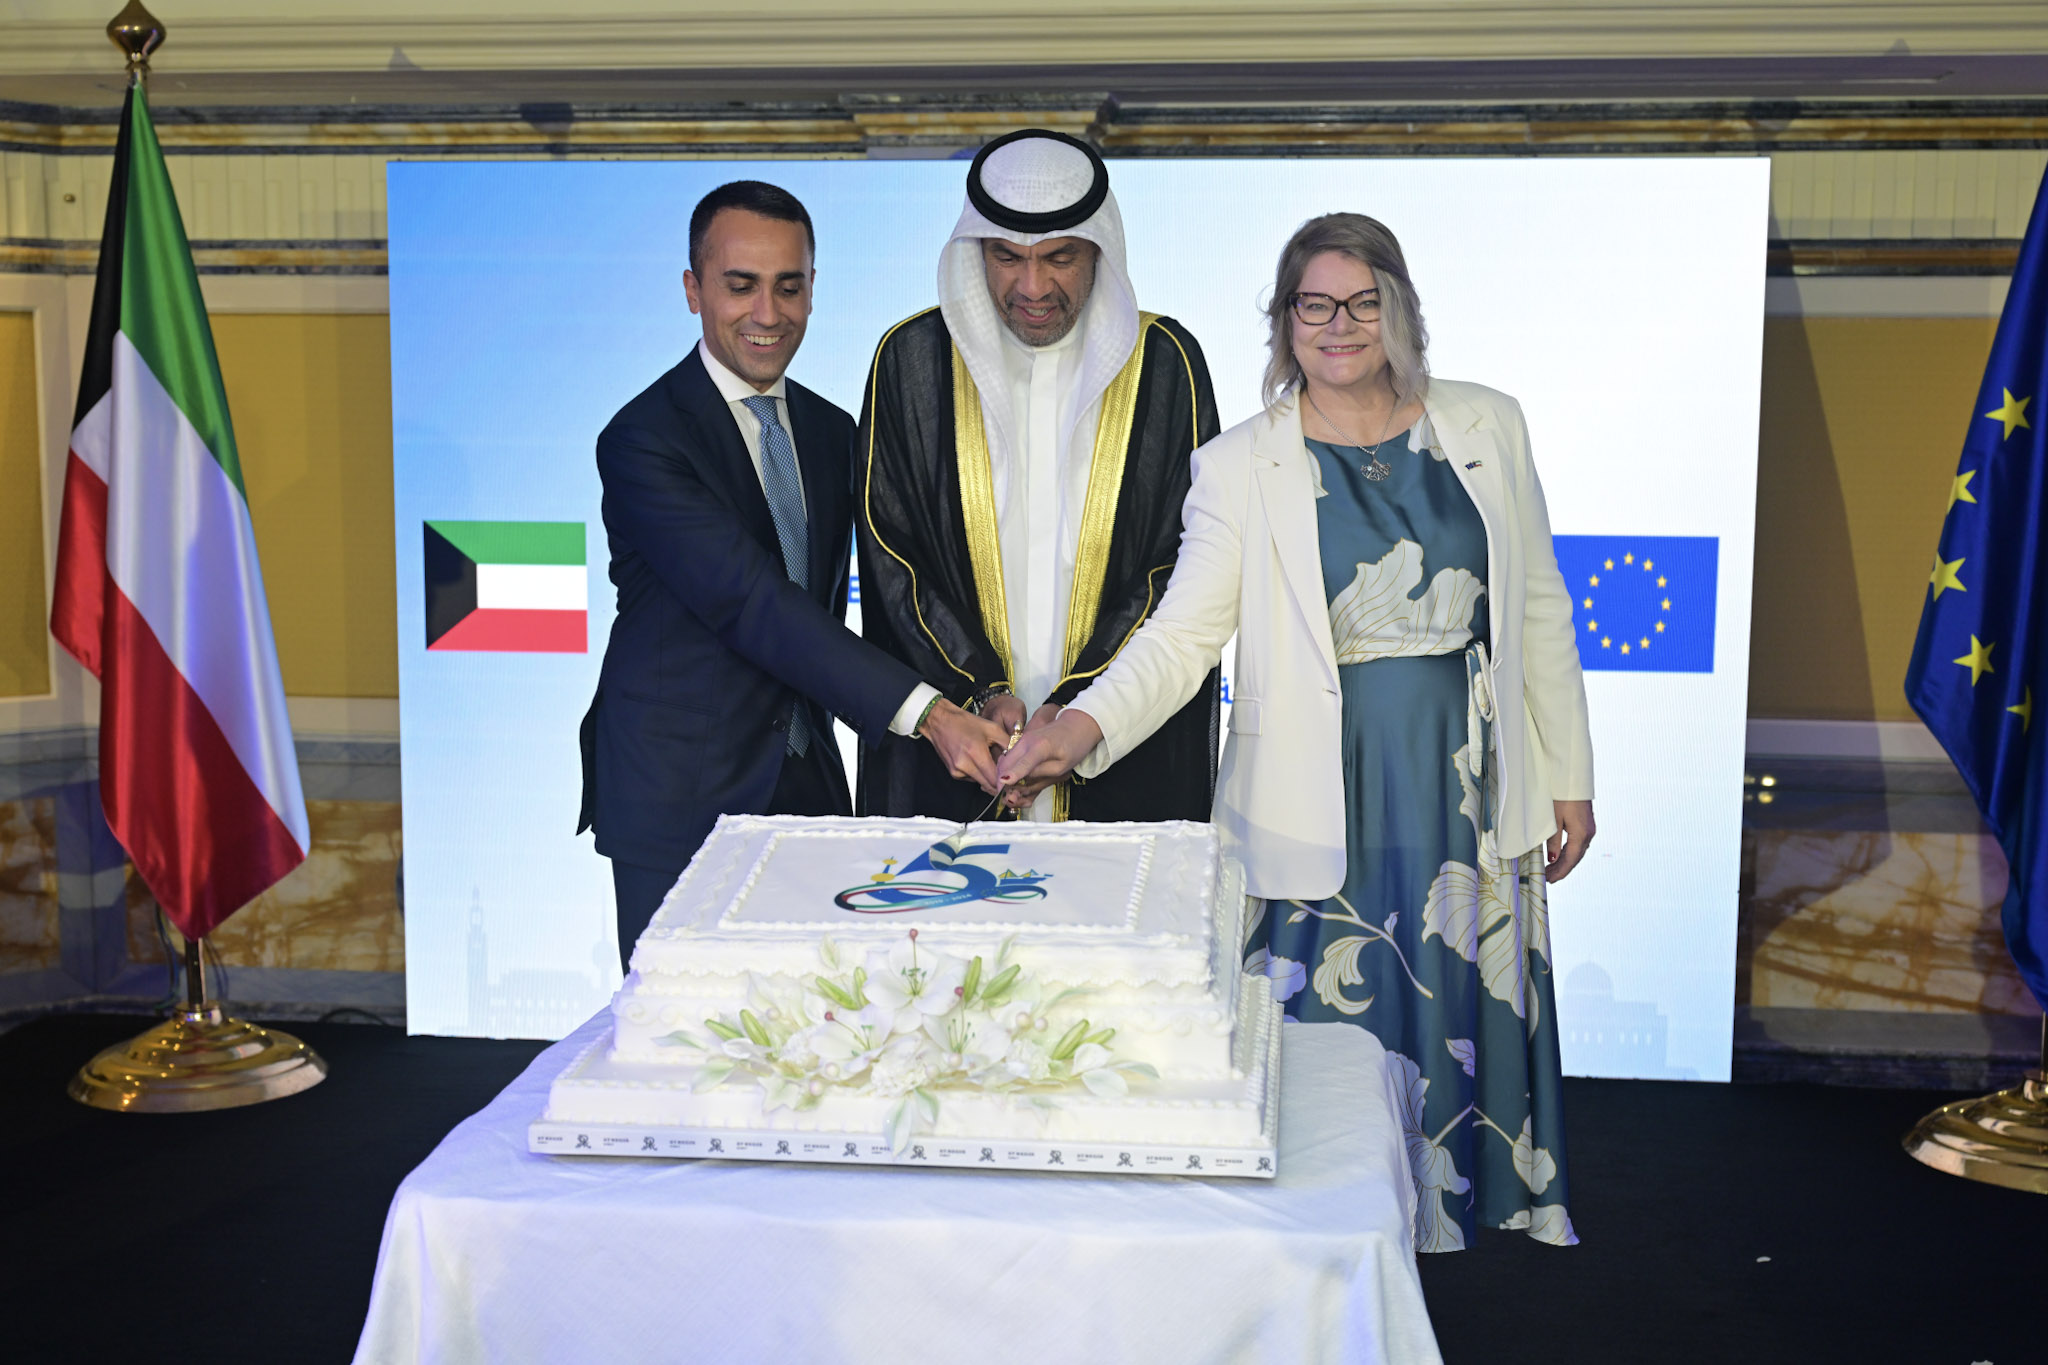 الاتحاد الأوروبي في الكويت يحتفل بالذكرى الخامسة لتأسيسه بحضور وزير الخارجية الكويتي والممثل الخاص للاتحاد الأوروبي لمنطقة الخليج